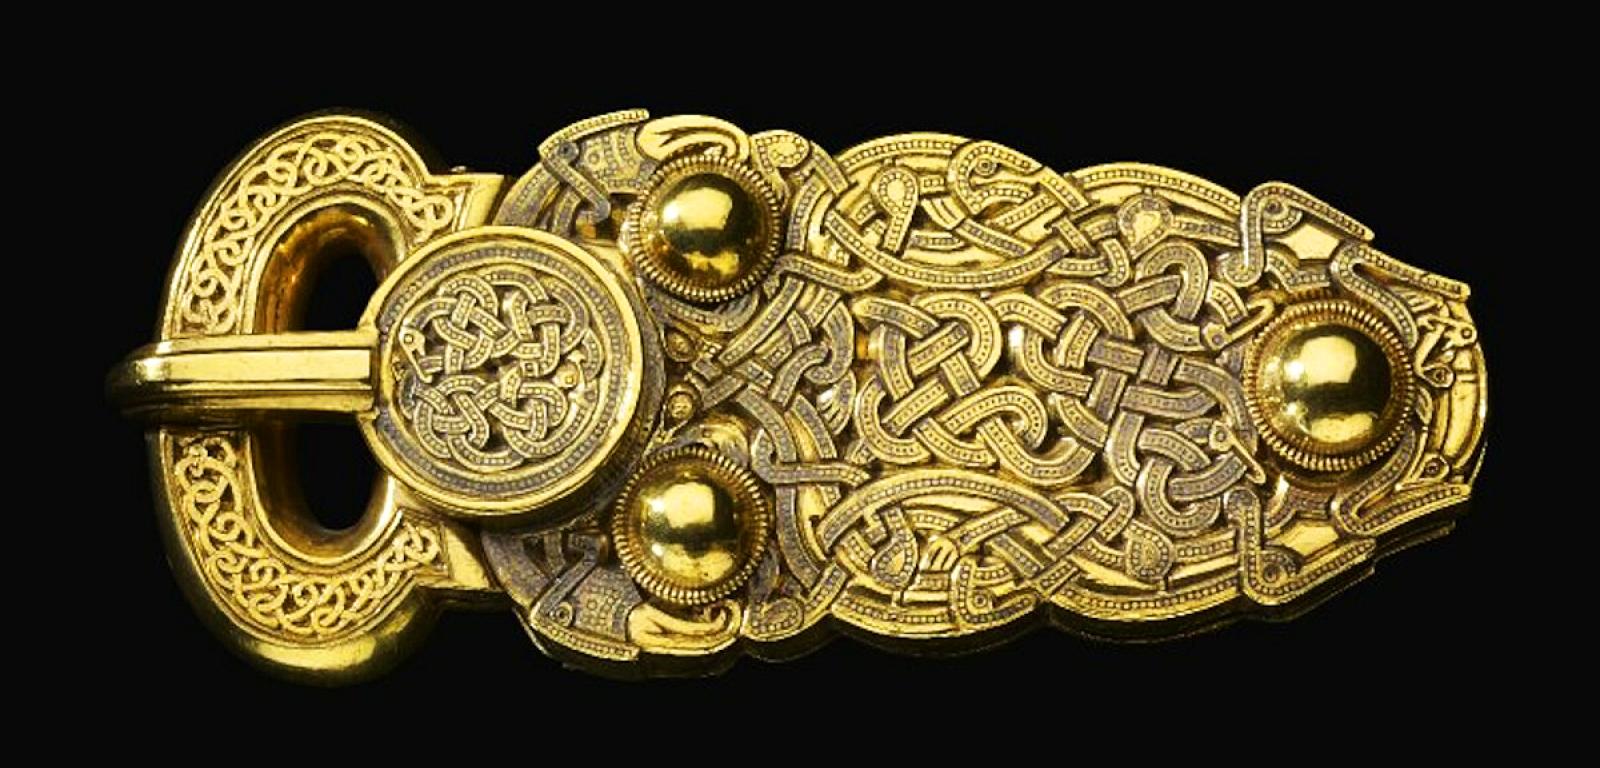 Złota sprzączka do pasa znaleziona na najsłynniejszym stanowisku Anglosaskim – Sutton Hoo na południe od Woodbridge w Suffolk.